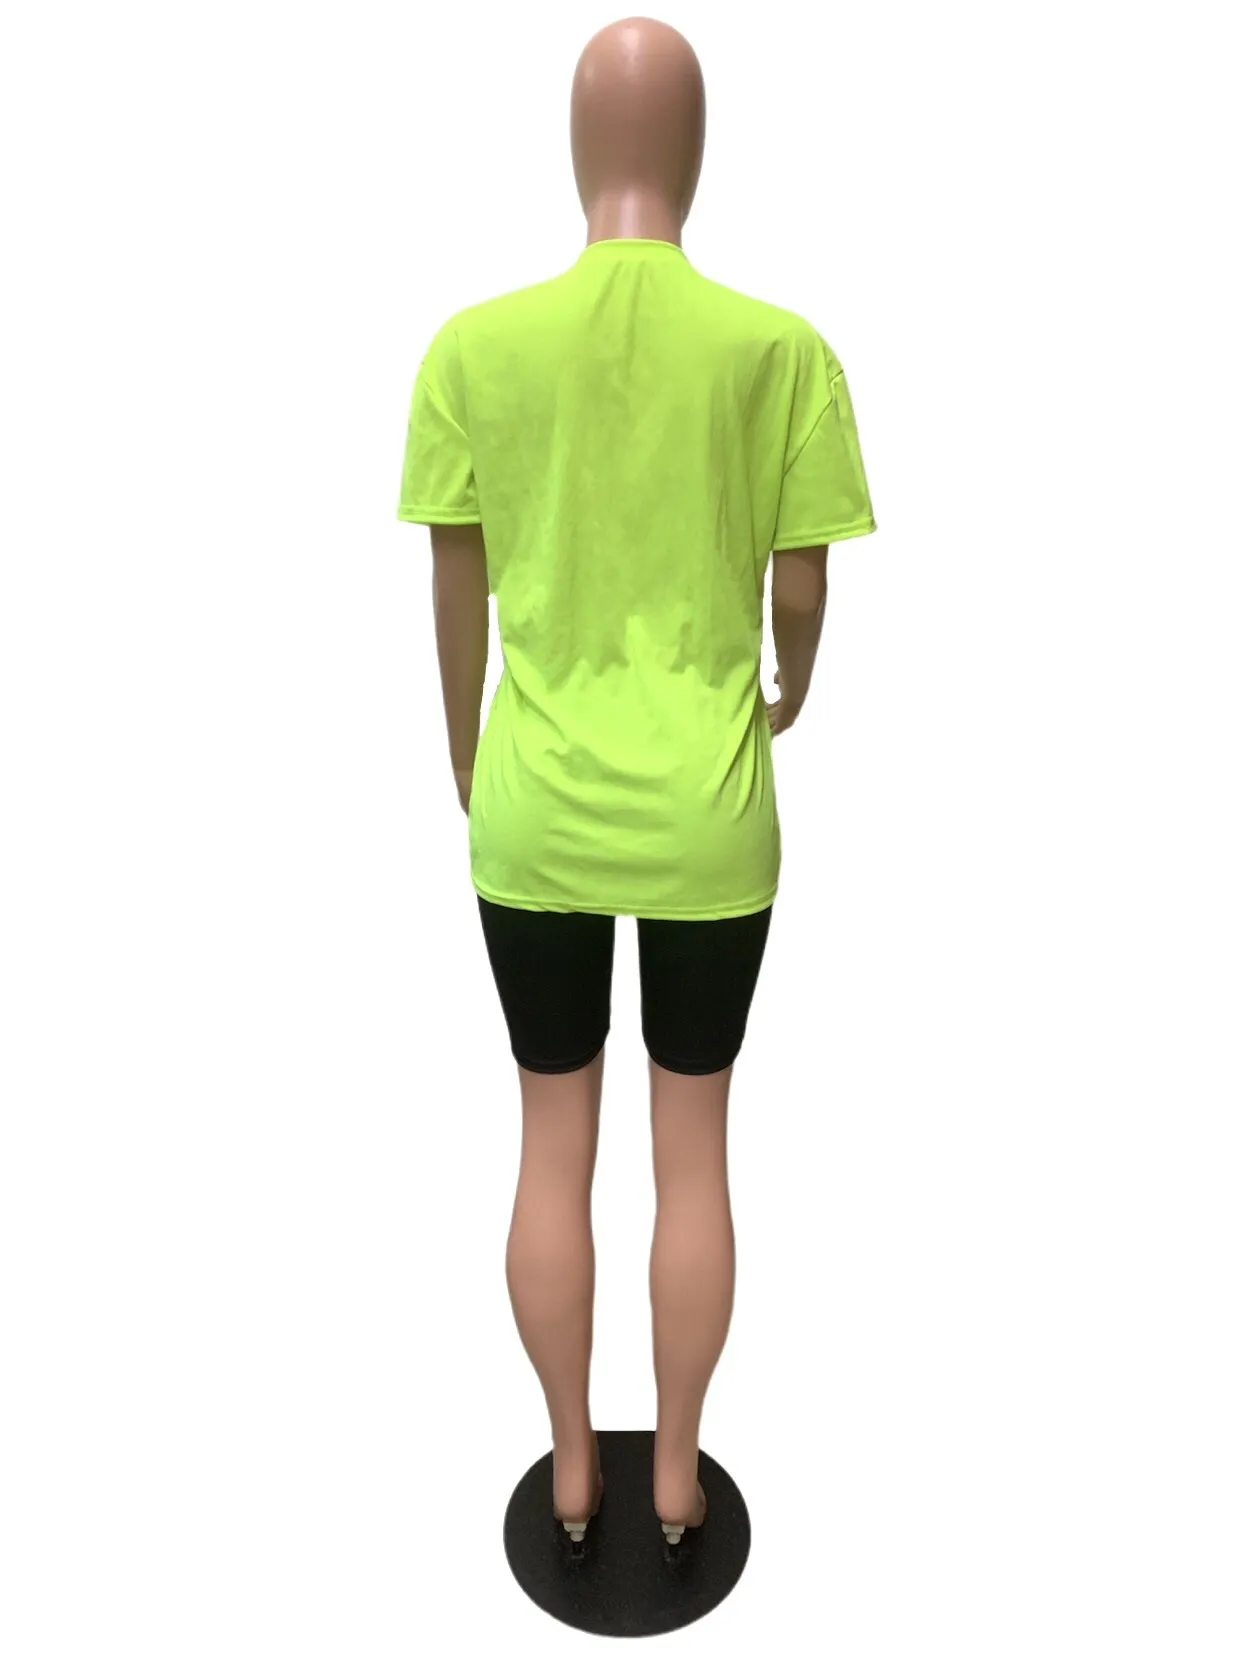 Neon Yeşil Mektup Baskılı Loungewear Kadınlar Için İki Parçalı Set Bayan Kıyafetler Yaz Gevşek Tişört Üst Biker Şort Eşofman 210525